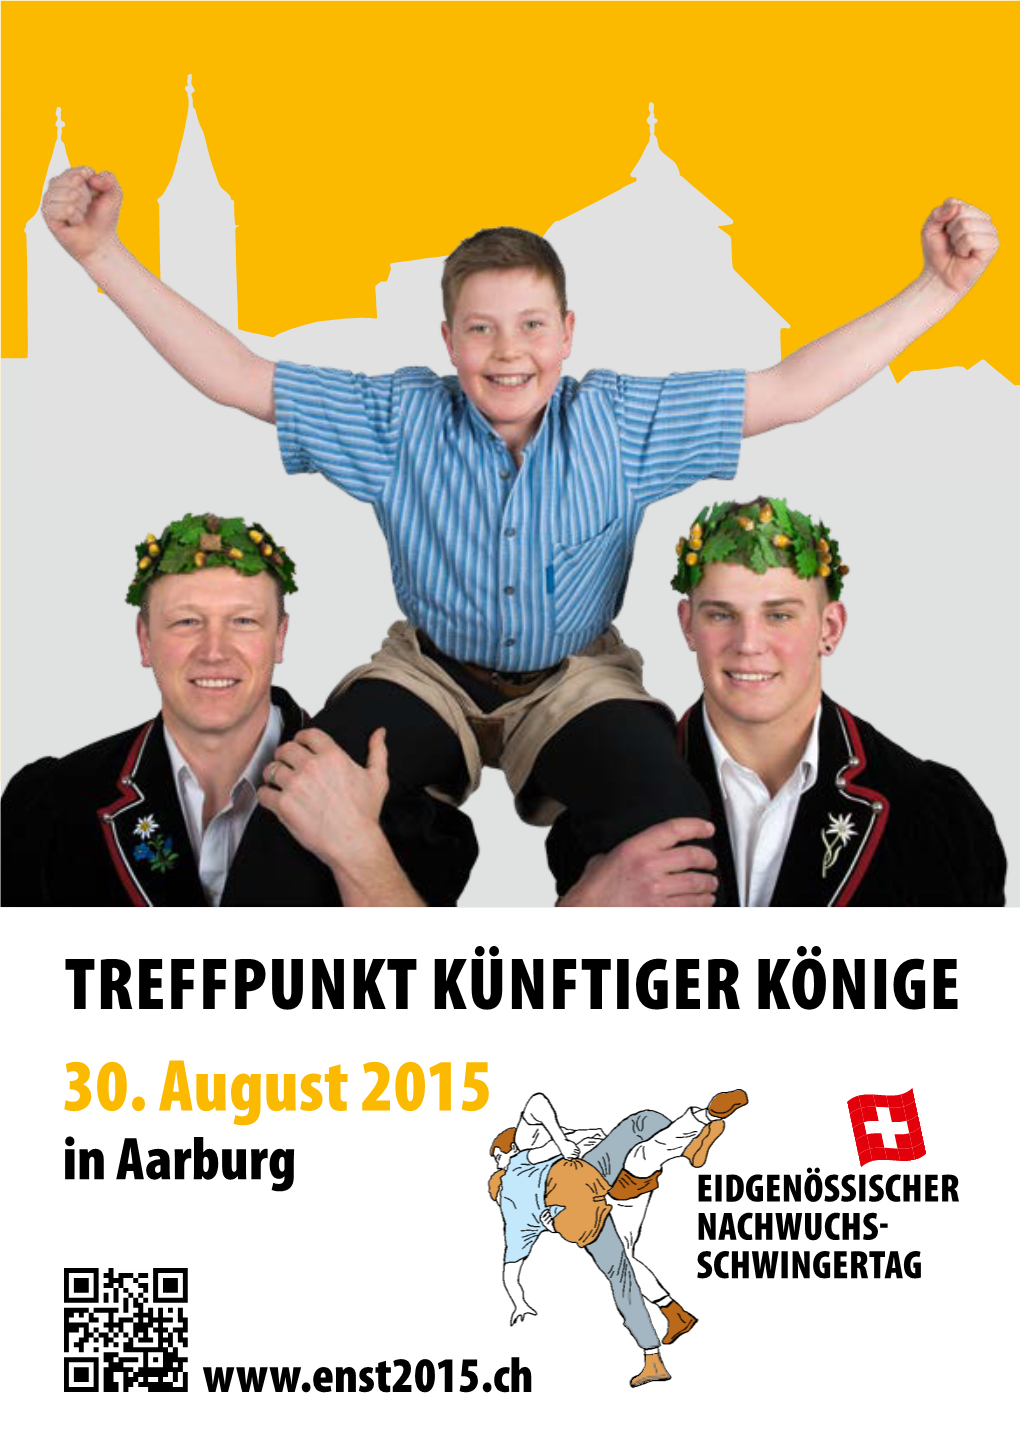 TREFFPUNKT KÜNFTIGER KÖNIGE 30. August 2015 in Aarburg EIDGENÖSSISCHER NACHWUCHS SCHWINGERTAG